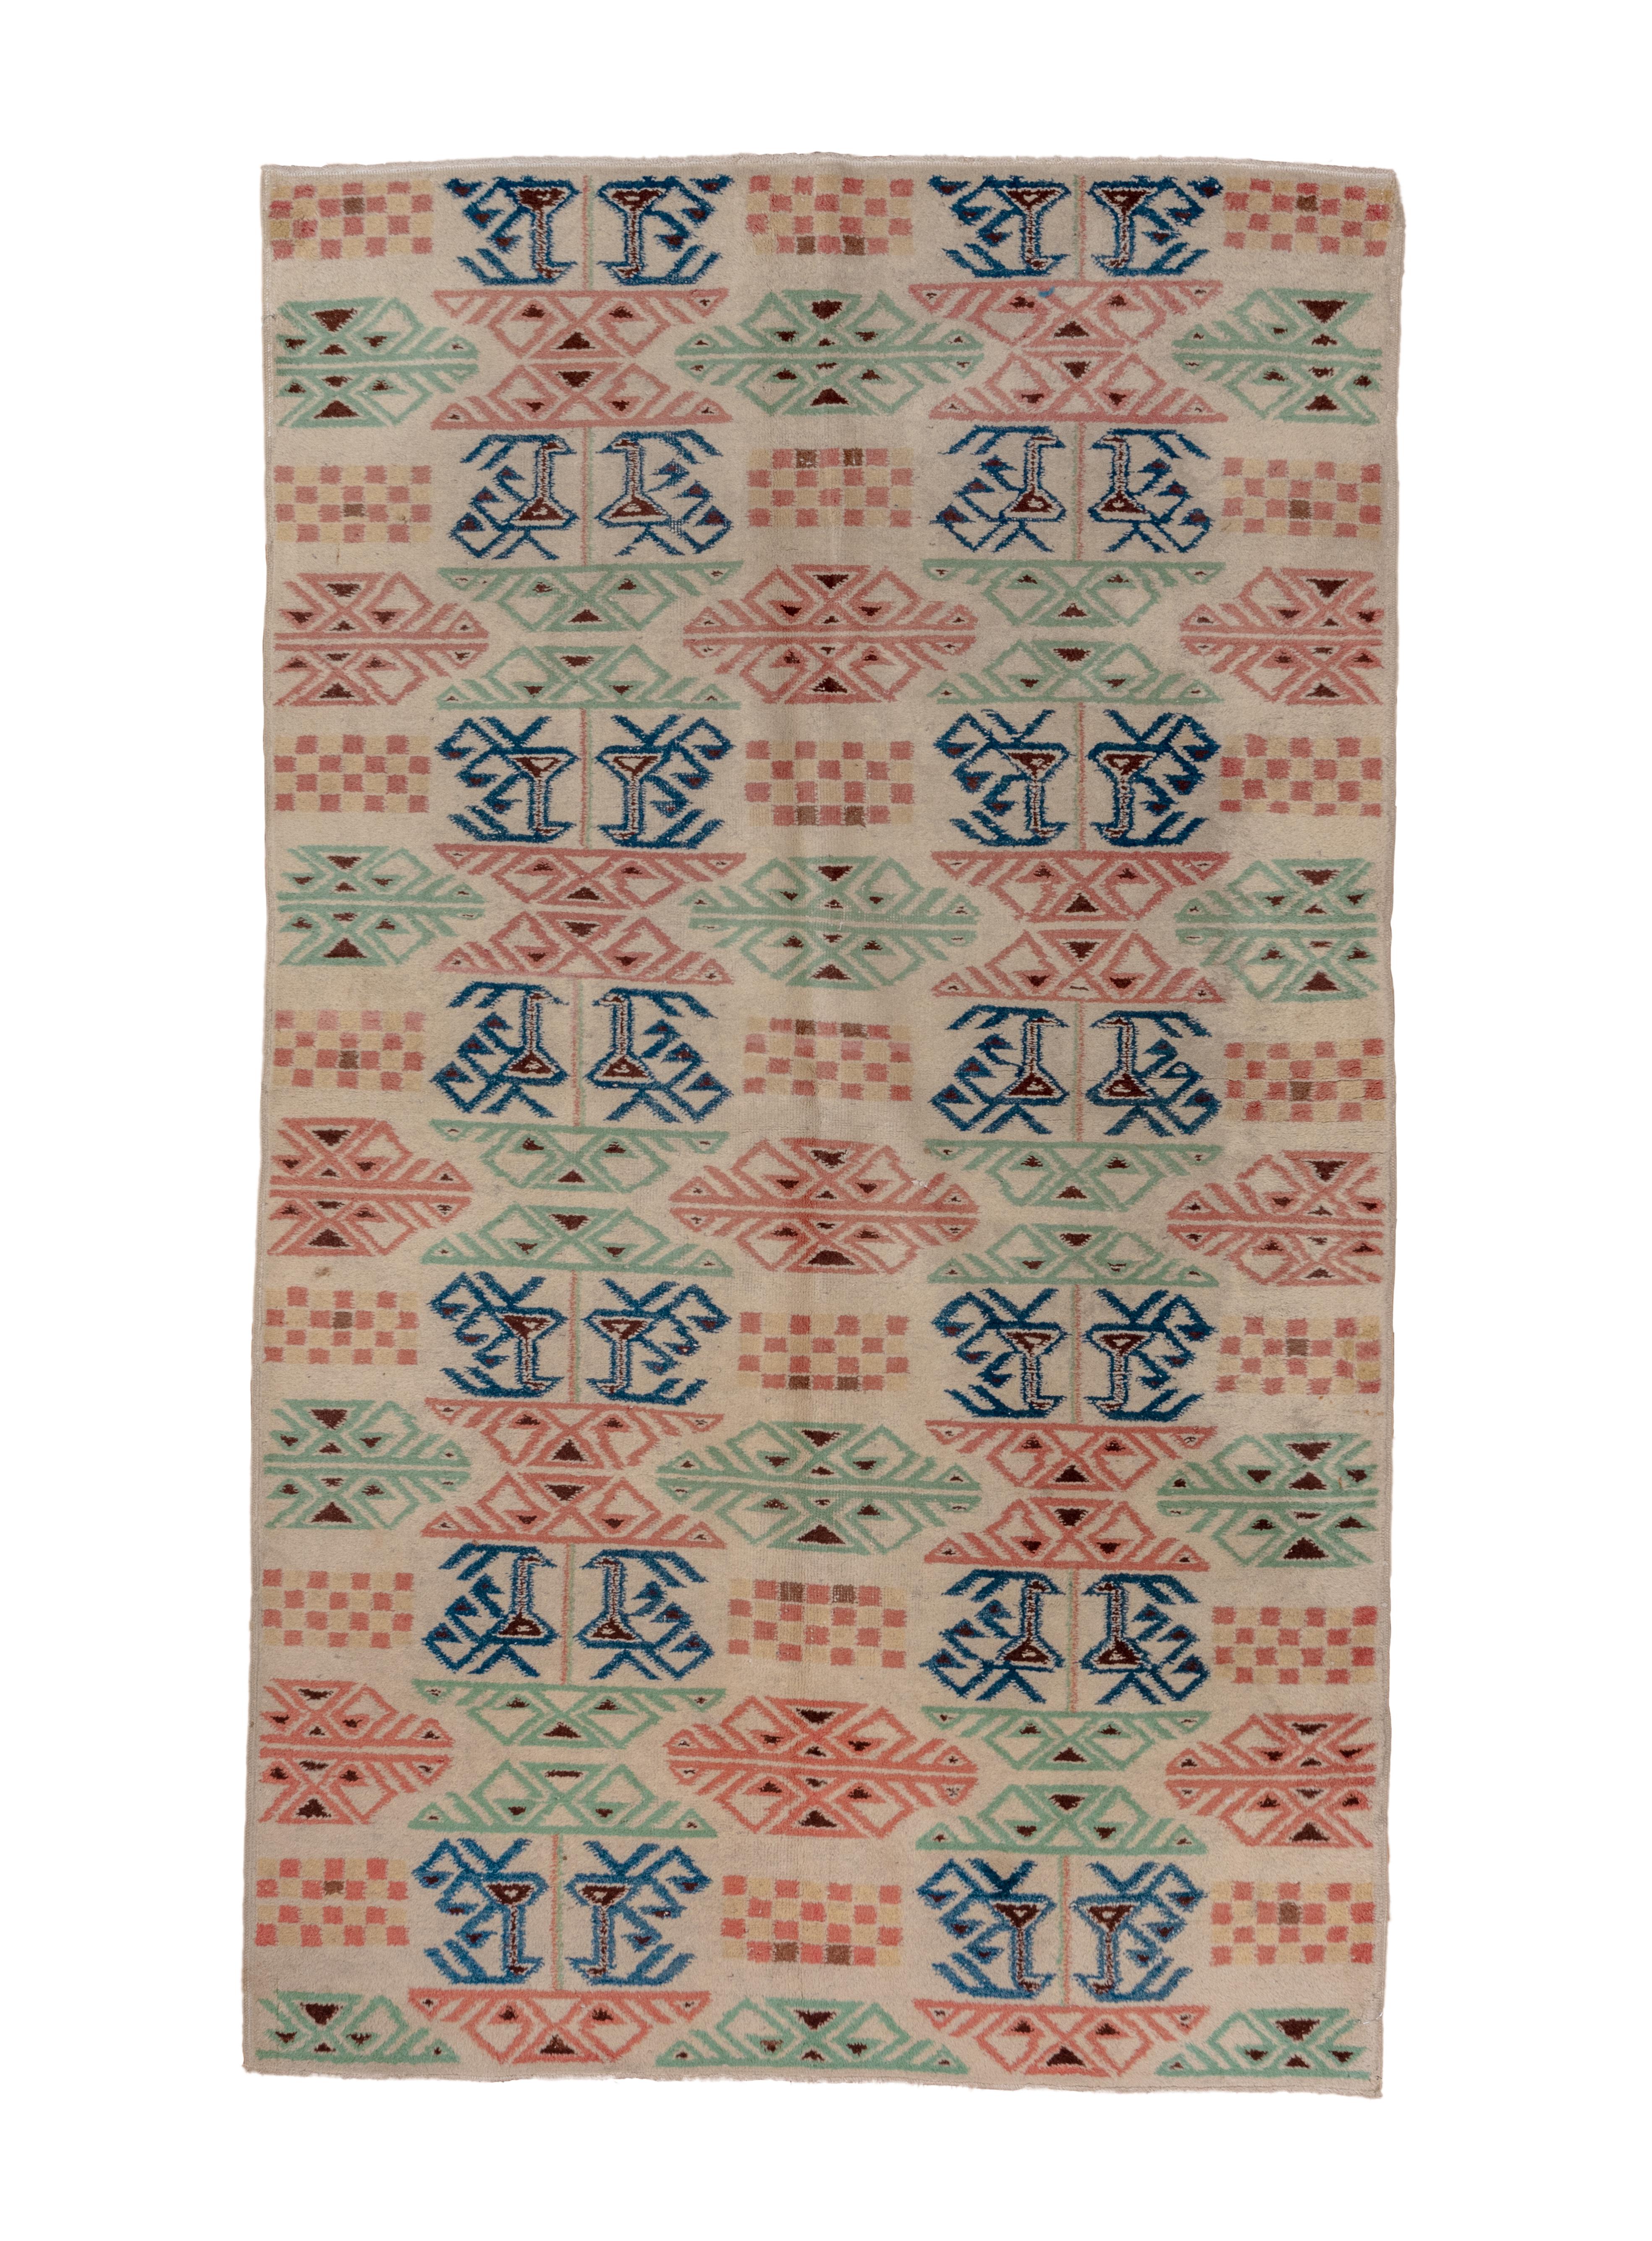 MY MODERN Zeki Muran
Türkischer Multicolor-Teppich CIRCA 1940er Jahre

Teppich Maßnahmen
60x98